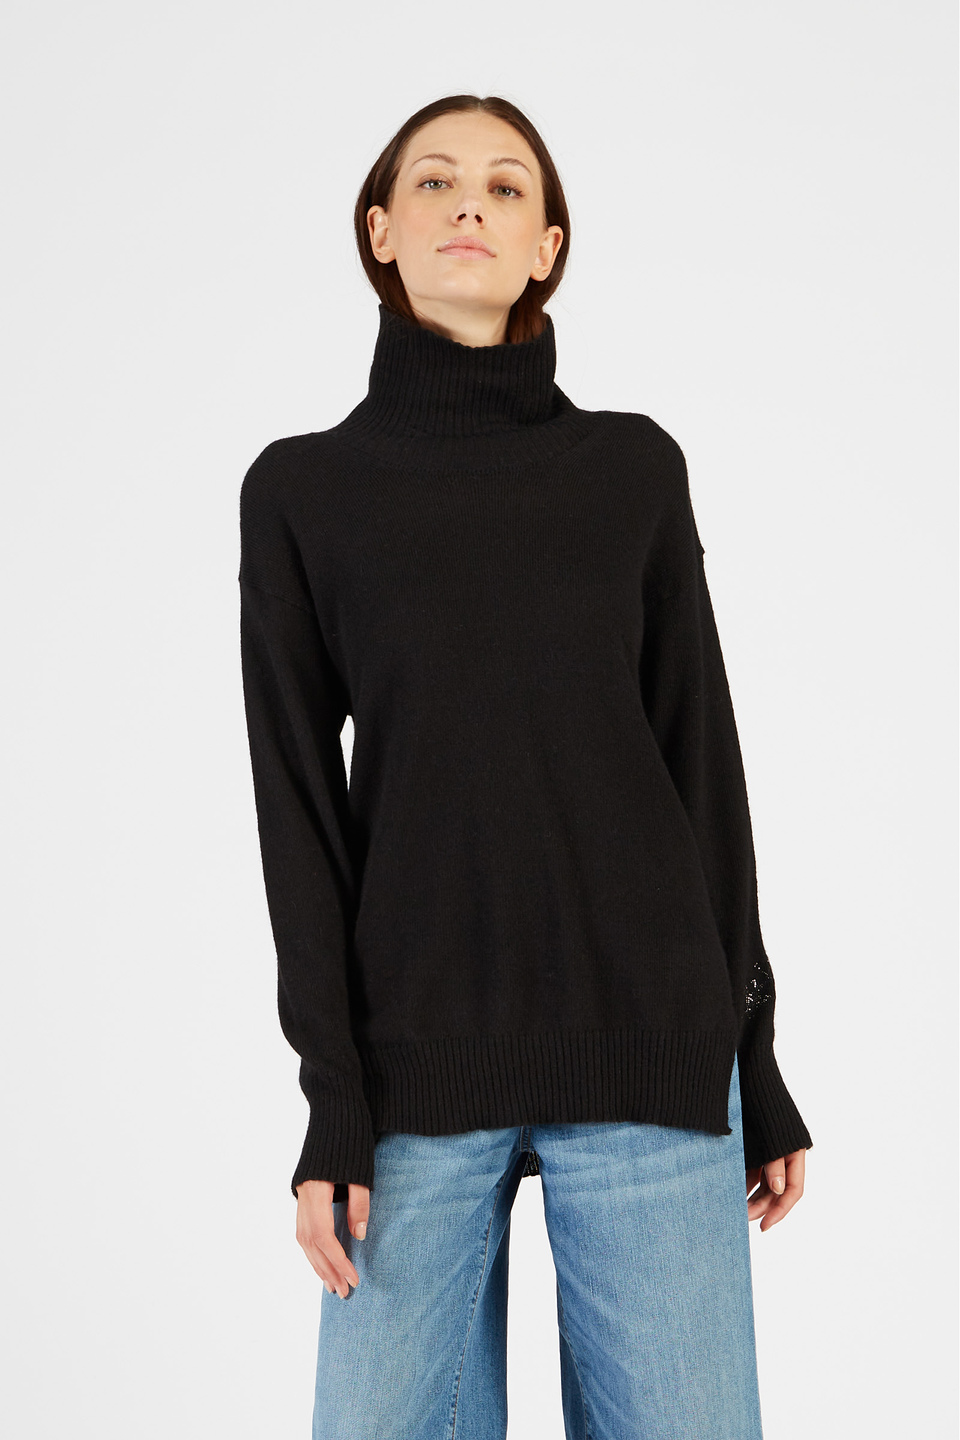 Jersey de cuello alto de mujer en alpaca ajuste regular | La Martina - Official Online Shop